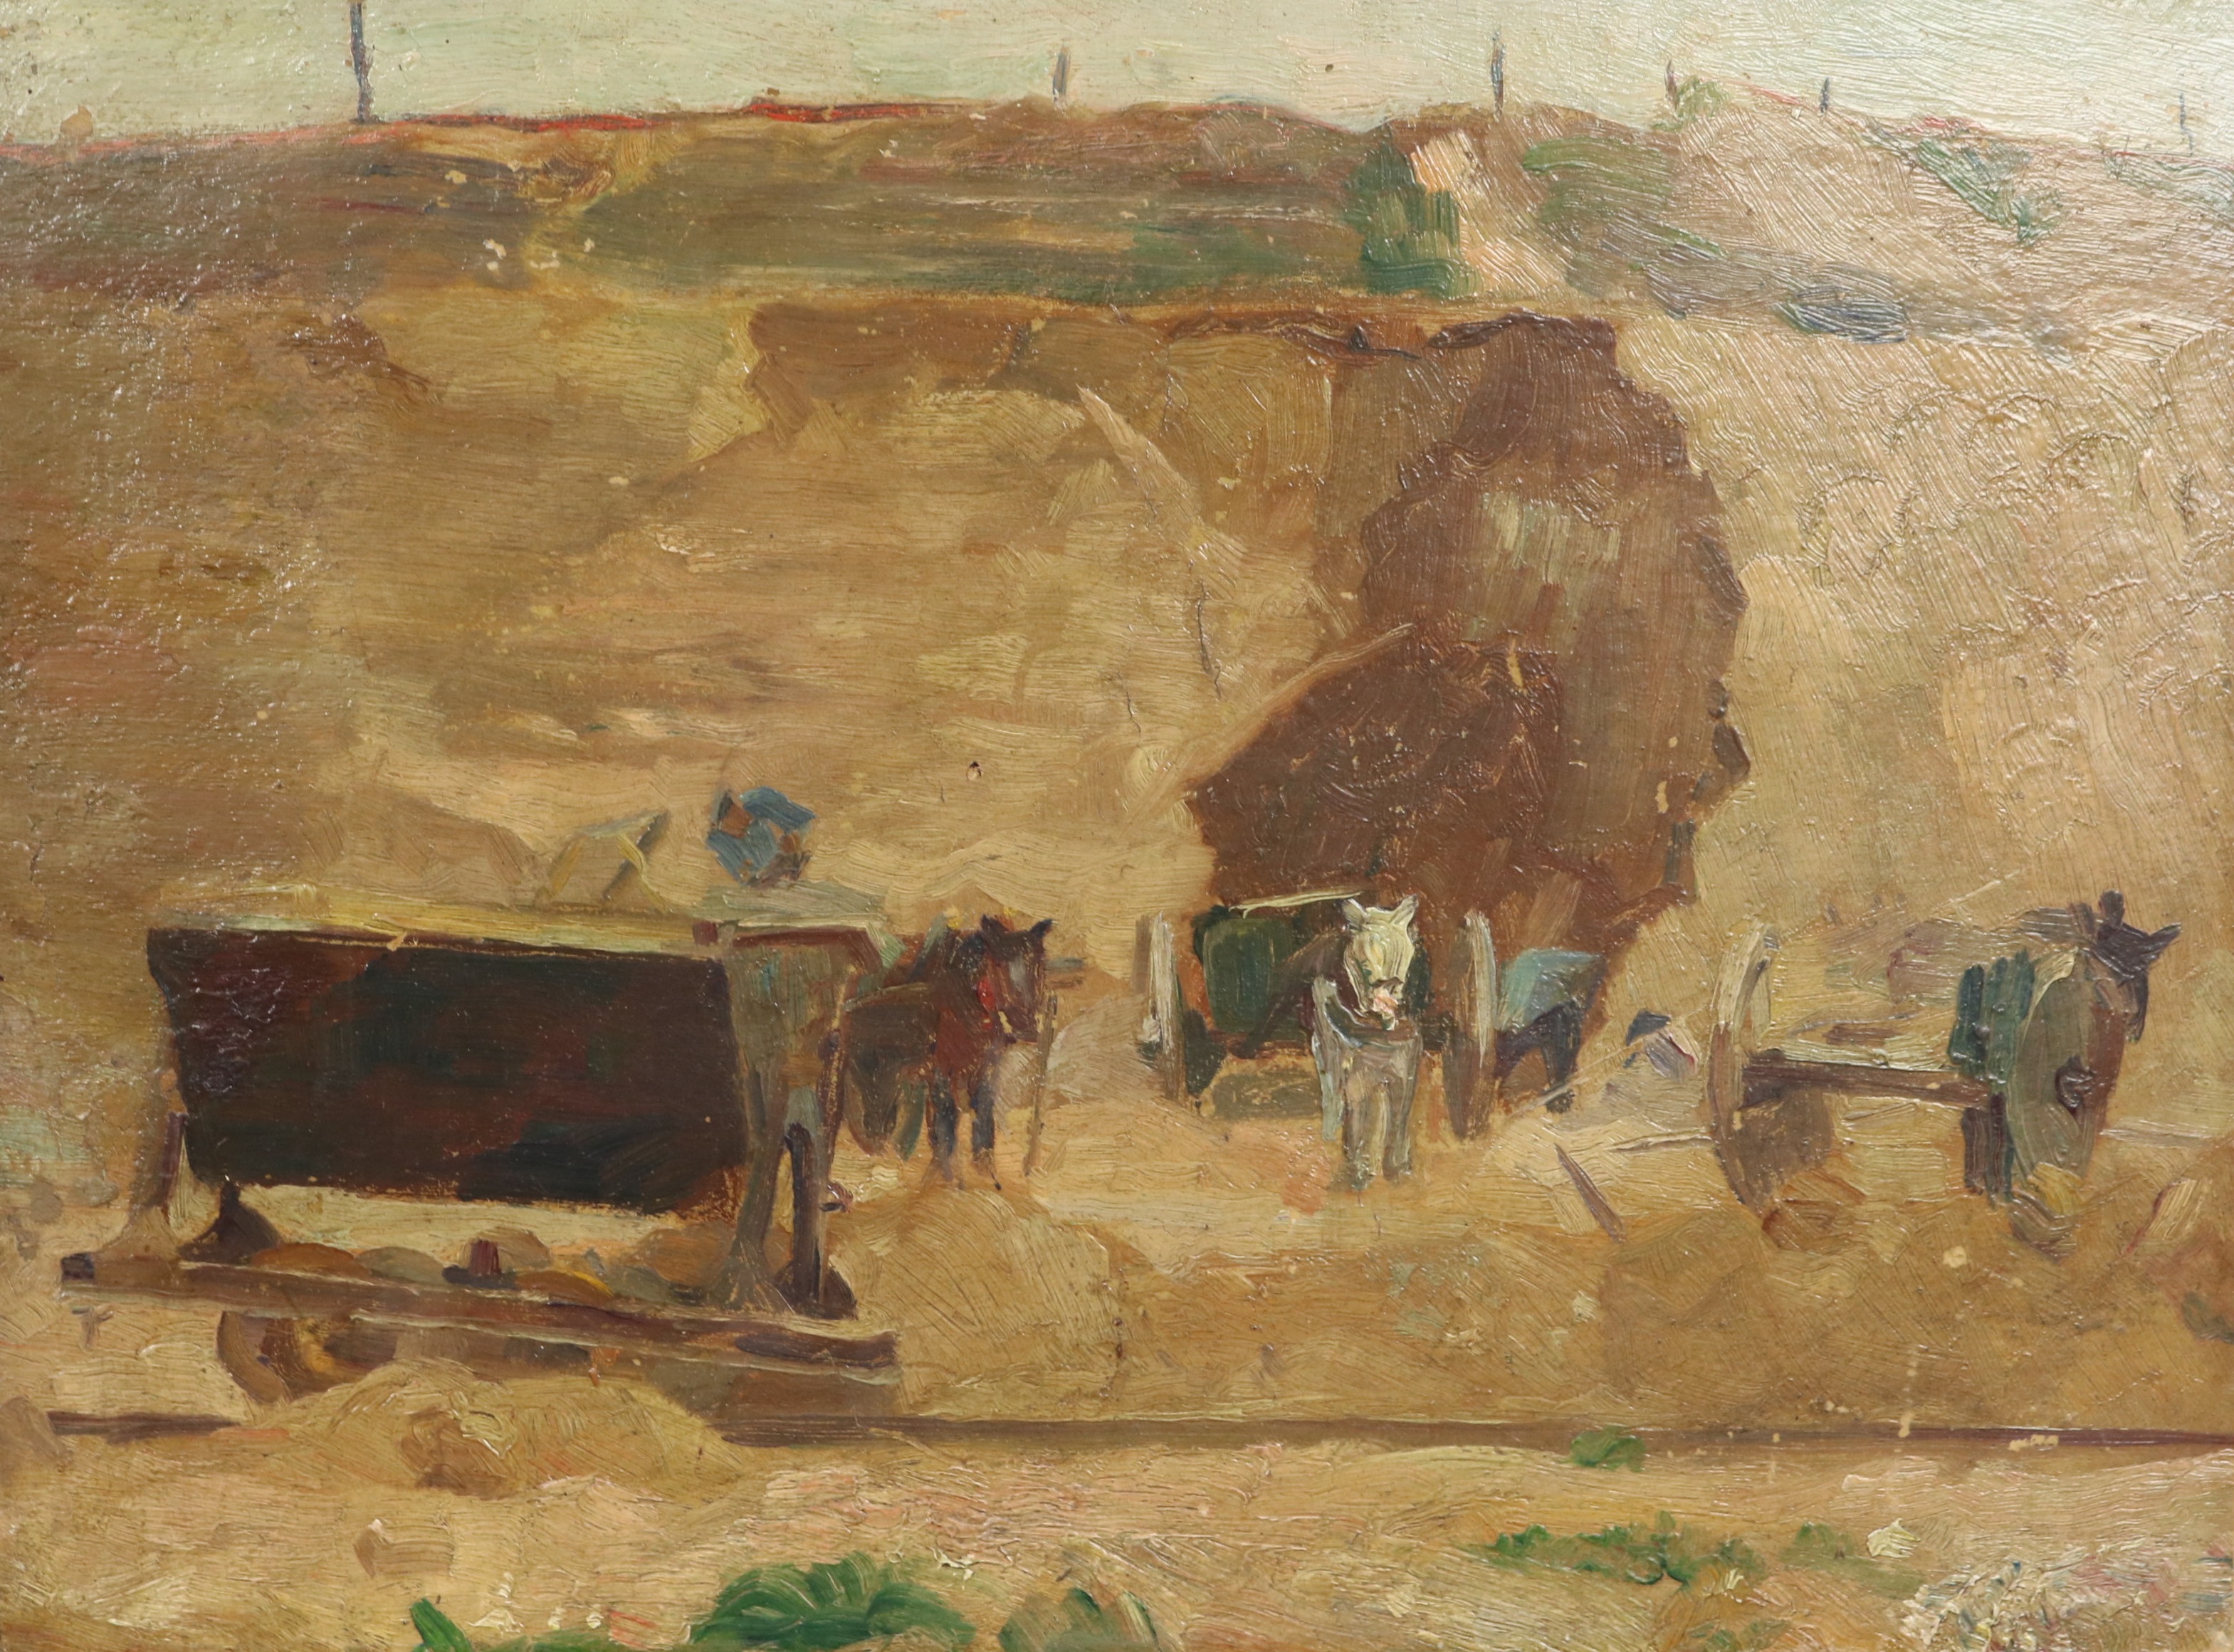 Arbeiders en werkpaarden bij een zandafgraving